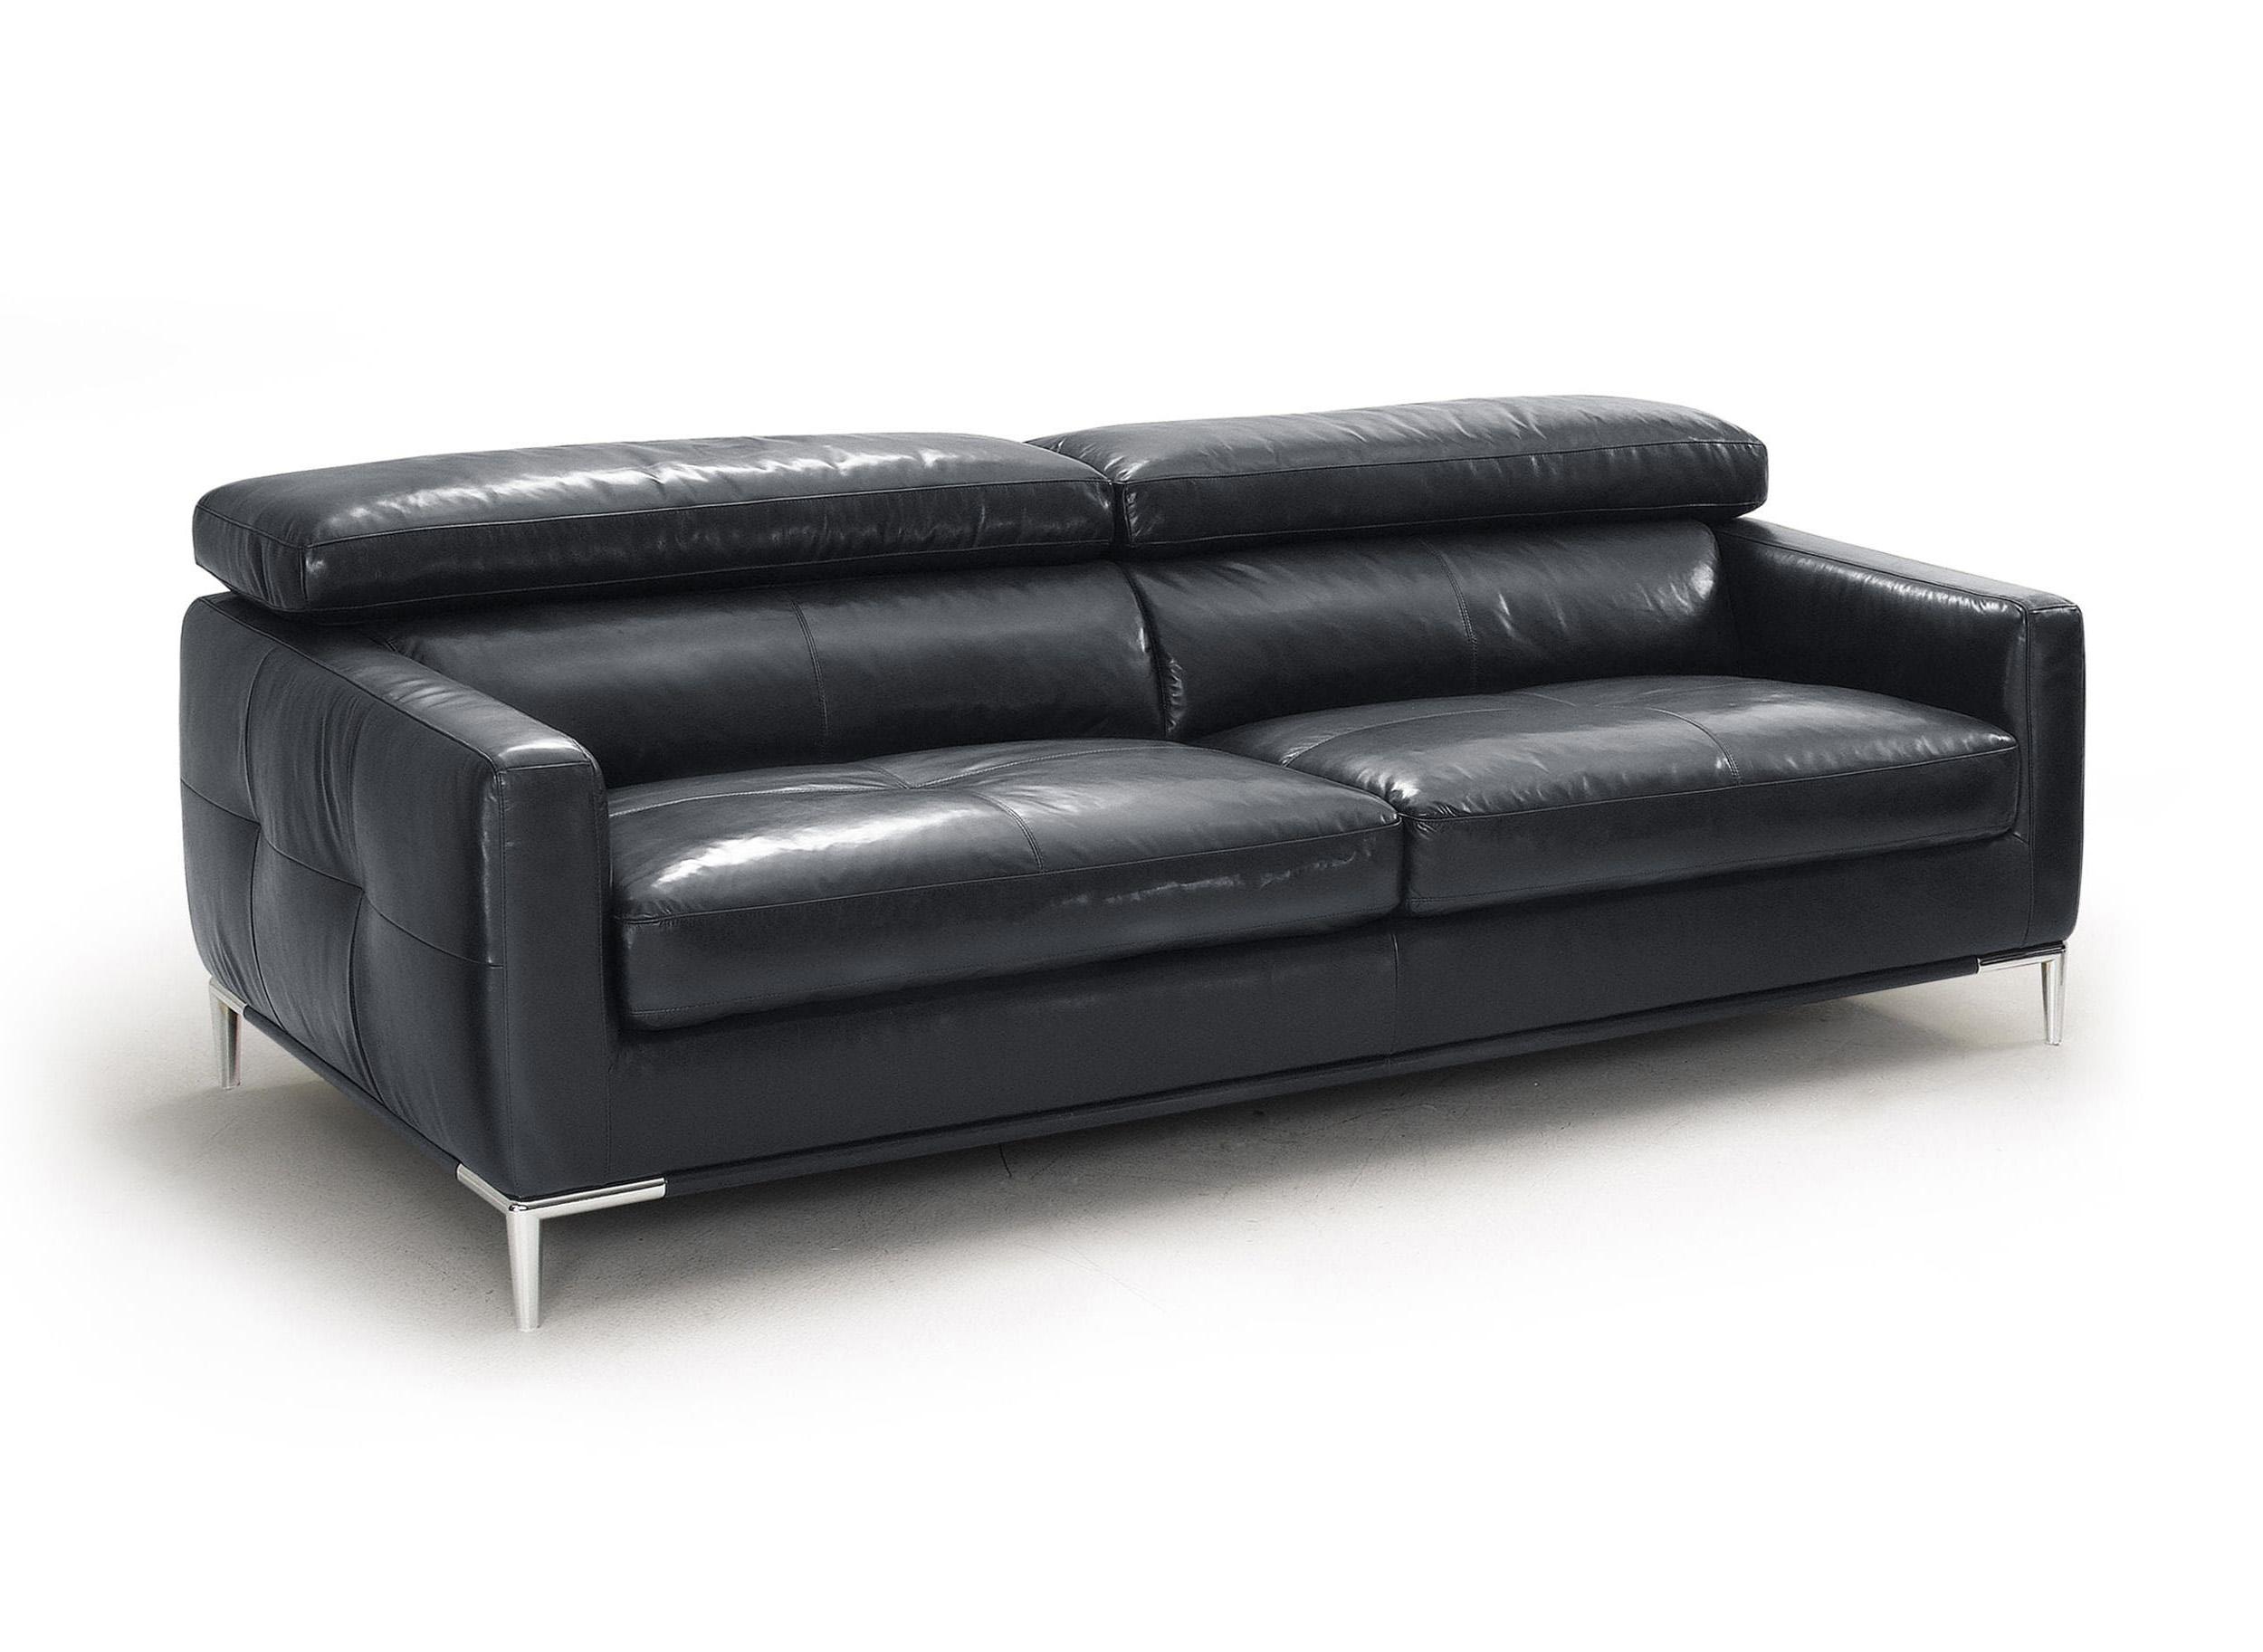 Contemporary, Modern Sofa VGKK1281X-BLK-S VGKK1281X-BLK-S in Black Leather